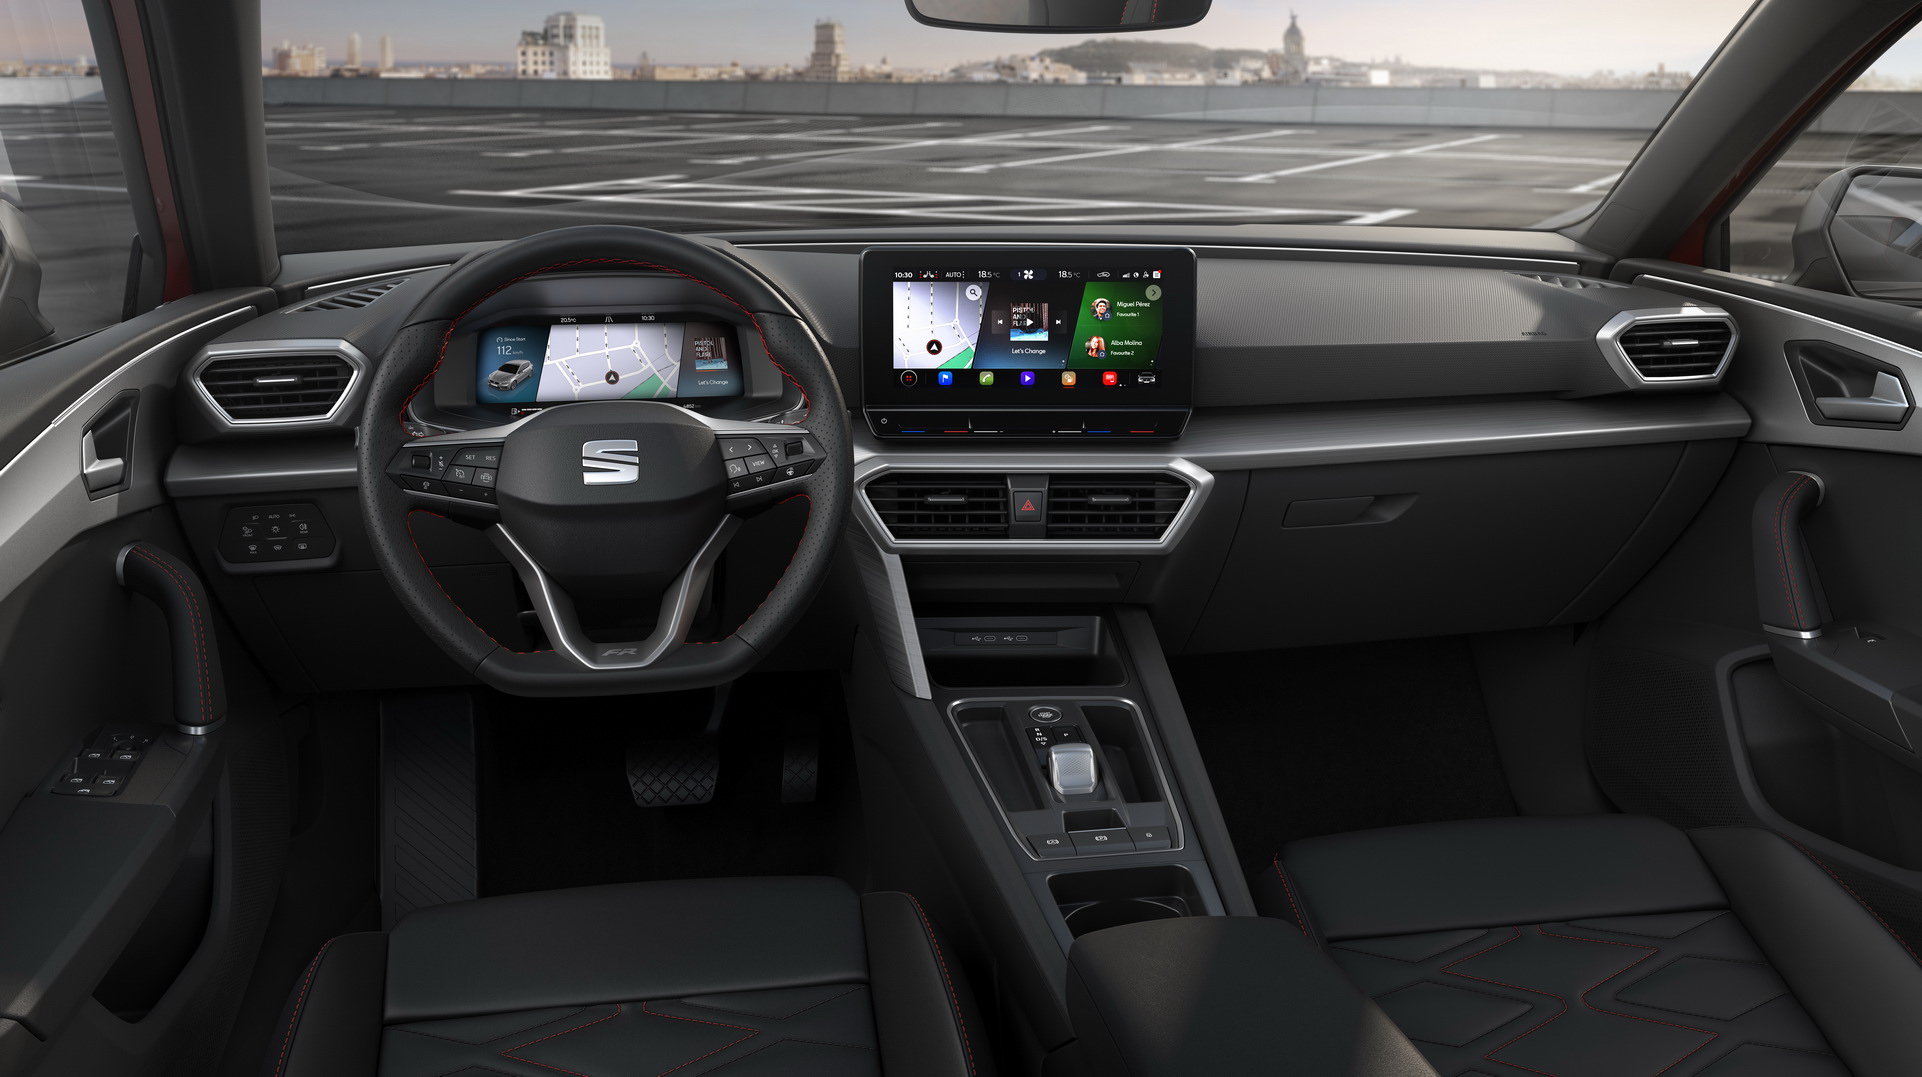 2020 Seat Leon tanıtıldı: İşte tasarımı ve özellikleri